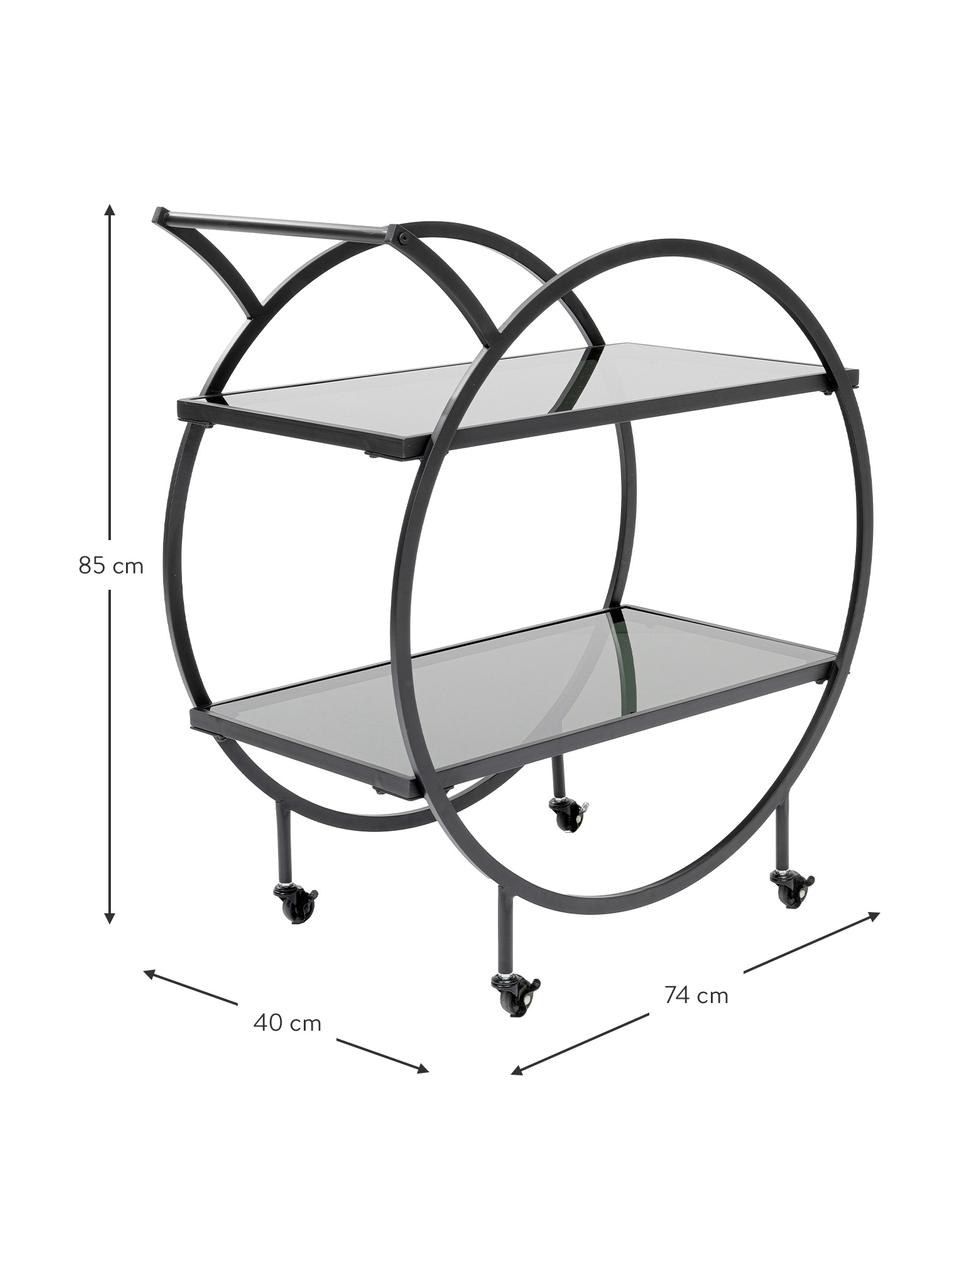 Camarera de metal Loft, Estructura: metal, recubierto en polv, Bandejas: vidrio laminado tintado, Negro, An 74 x Al 85 cm